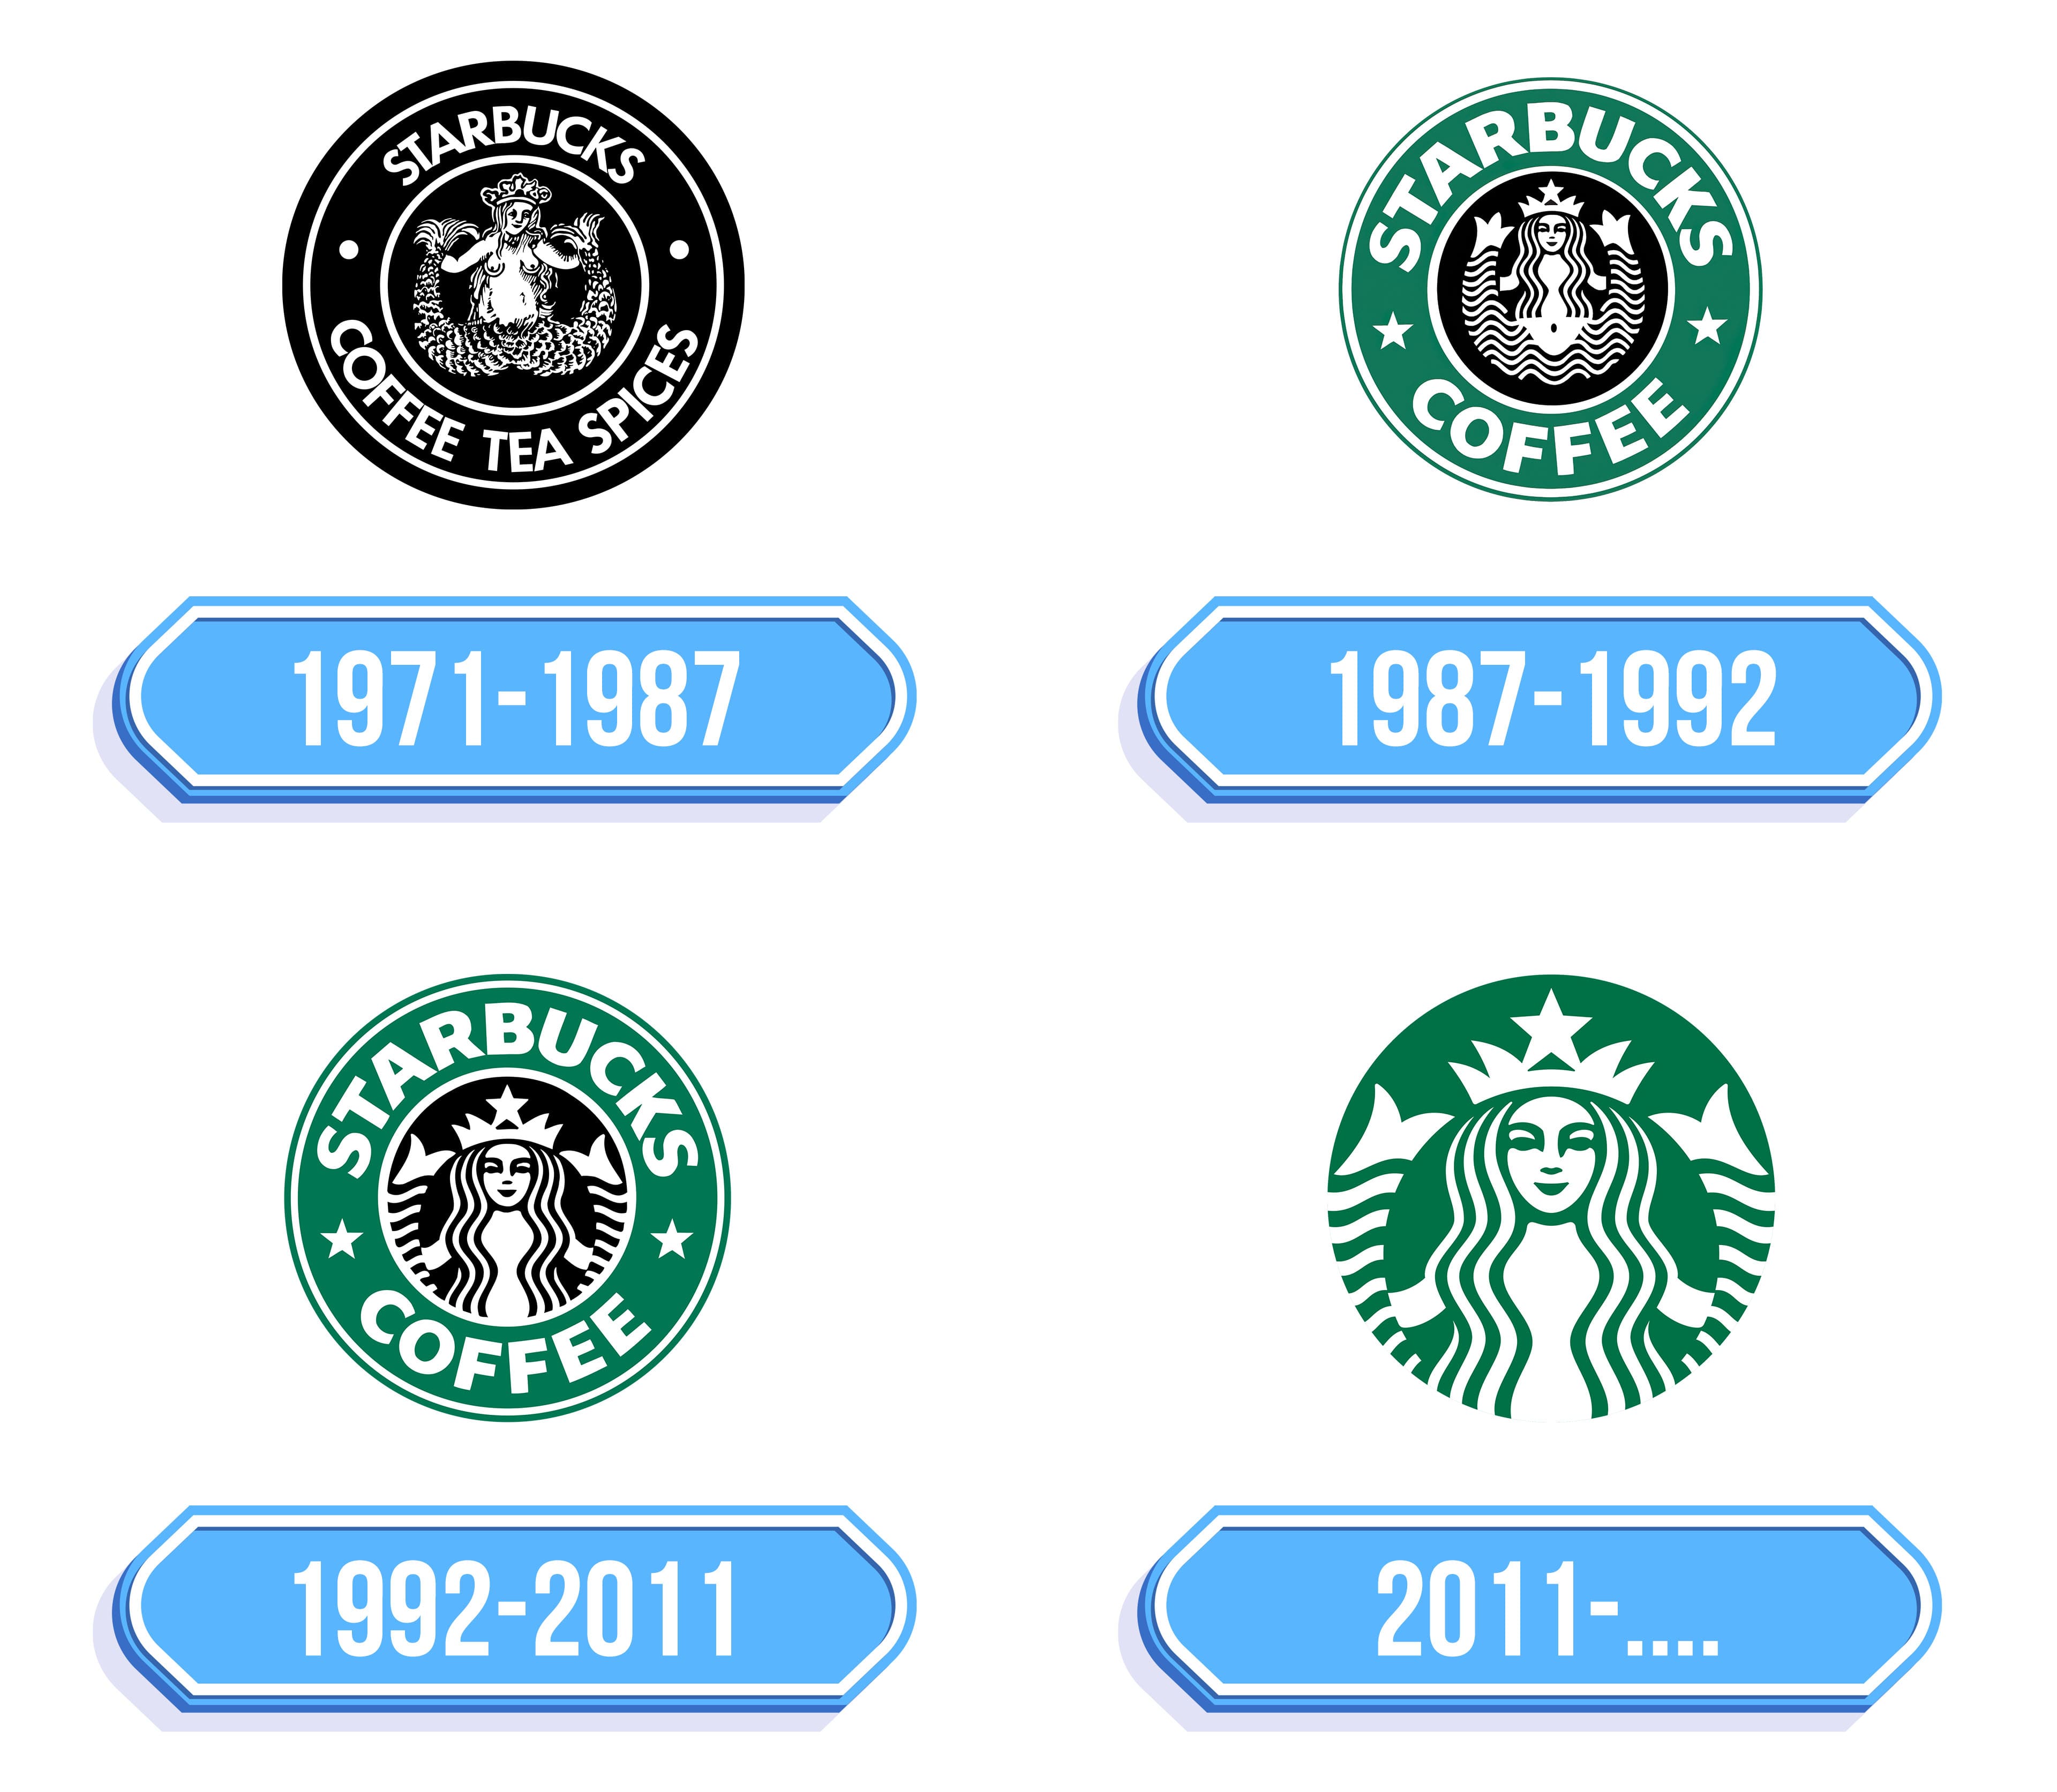 Starbucks Logo - Storia e significato dell'emblema del marchio